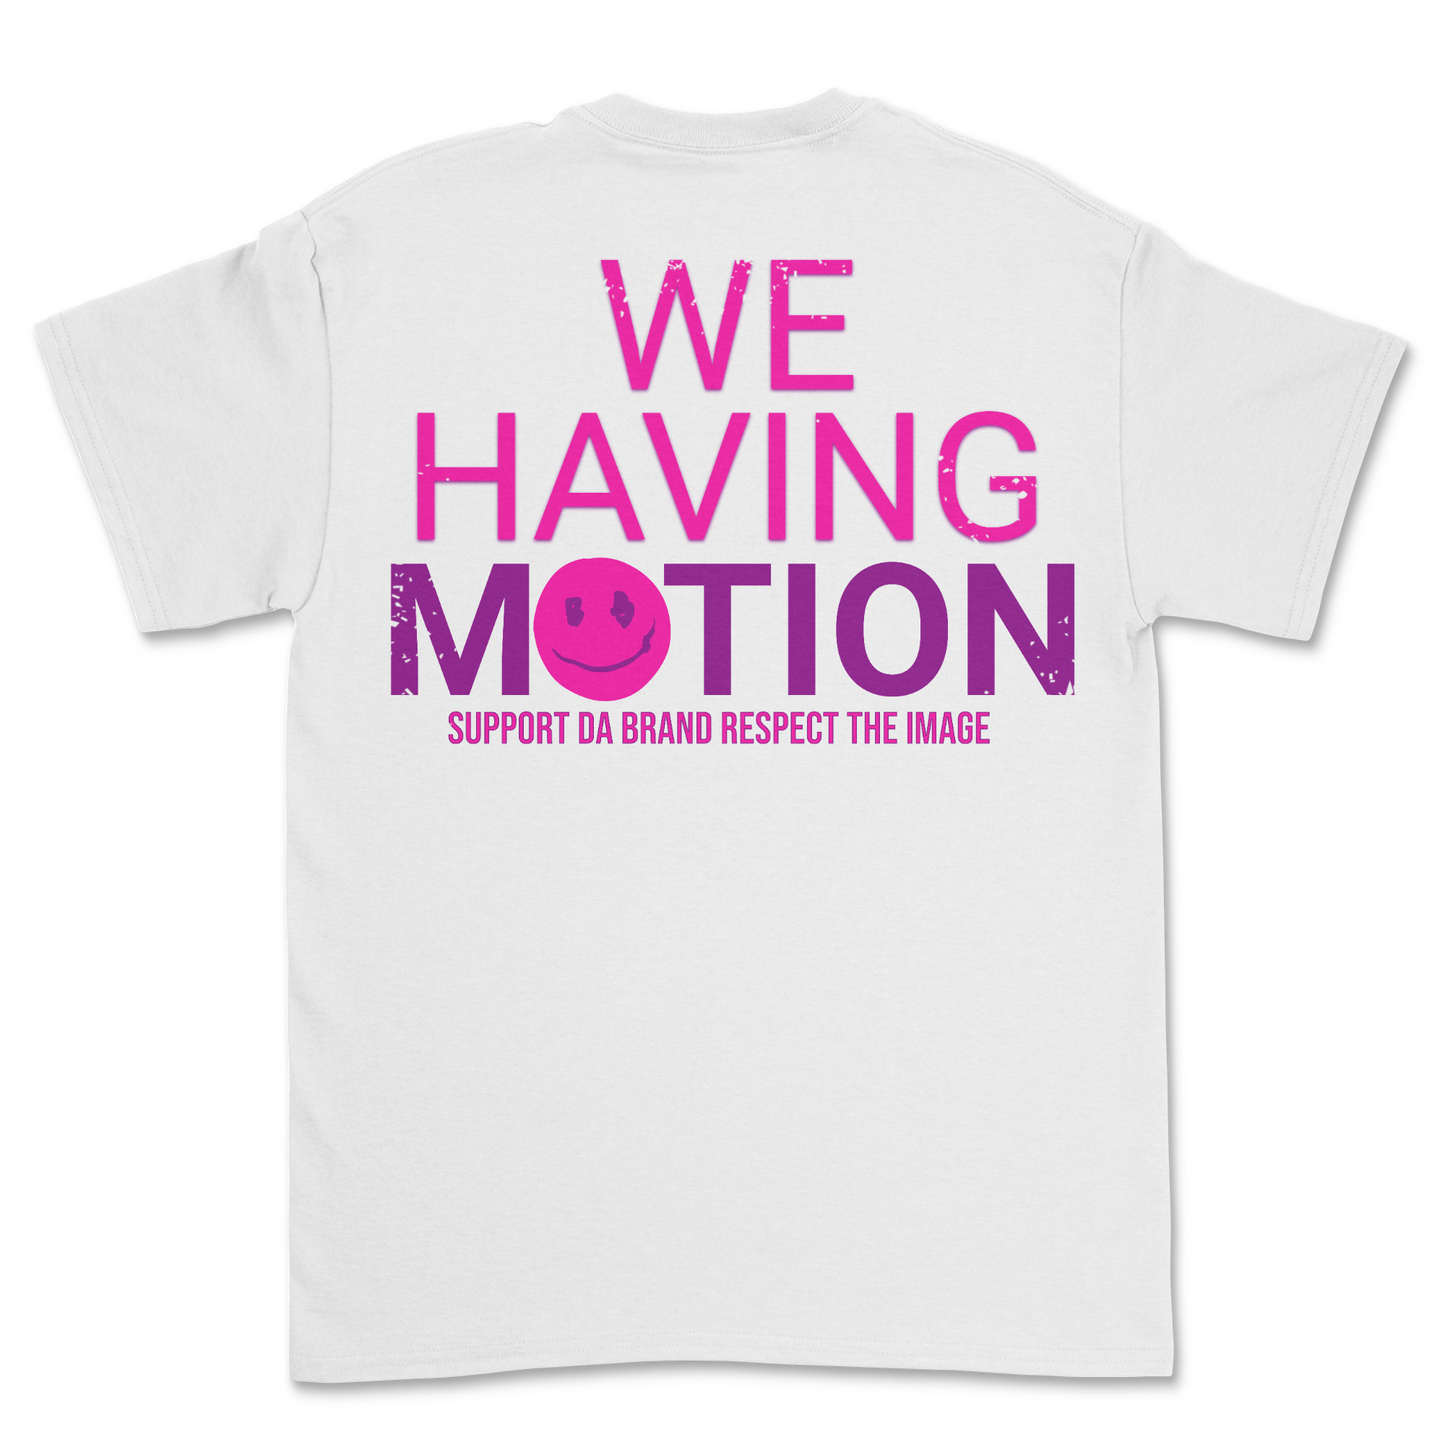 Having Motion Shirt